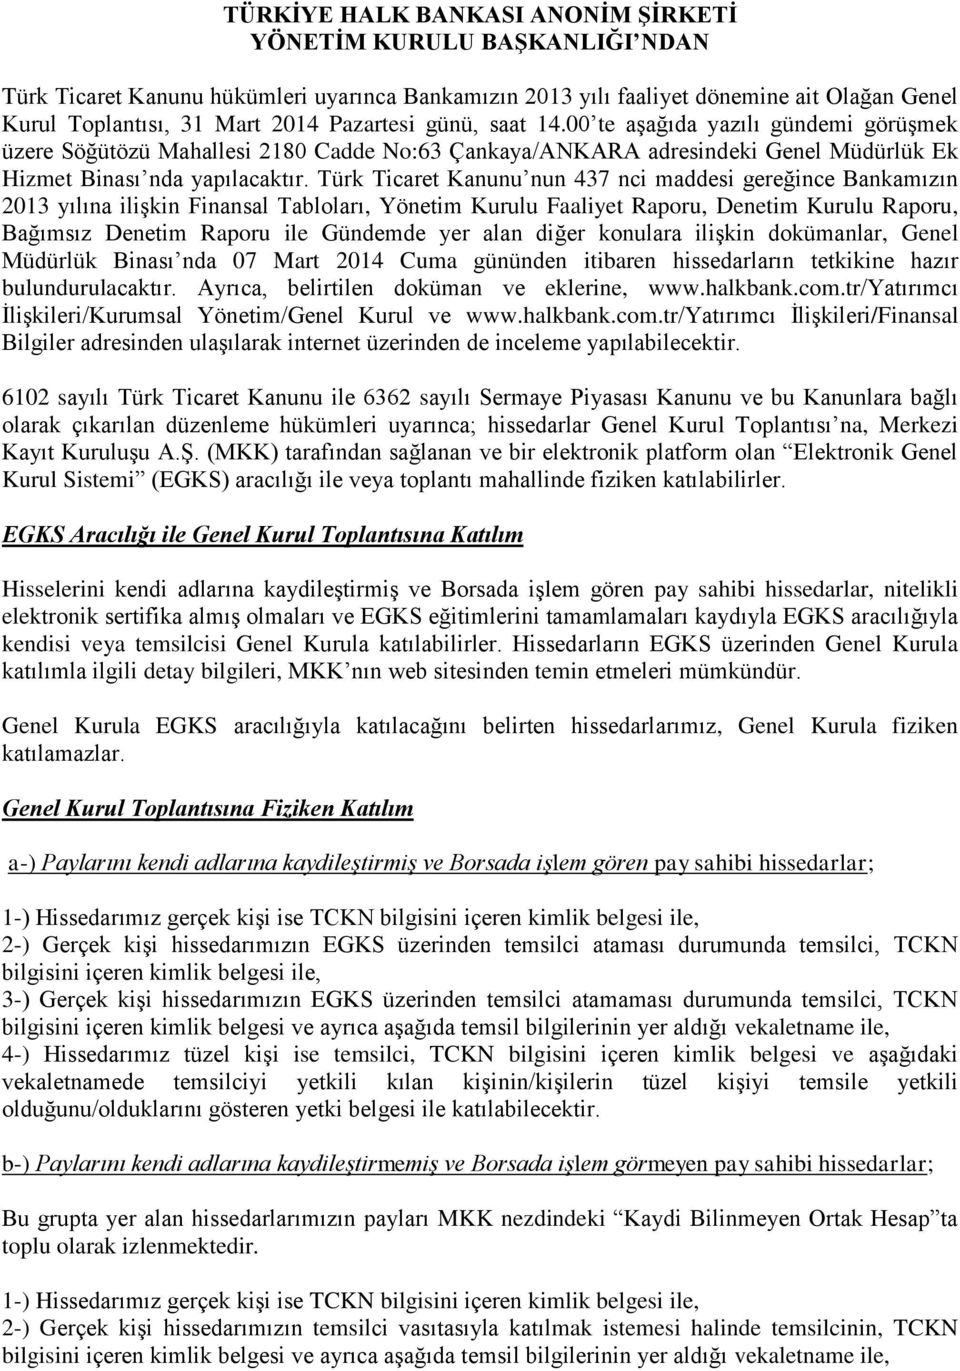 Türk Ticaret Kanunu nun 437 nci maddesi gereğince Bankamızın 2013 yılına ilişkin Finansal Tabloları, Yönetim Kurulu Faaliyet Raporu, Denetim Kurulu Raporu, Bağımsız Denetim Raporu ile Gündemde yer